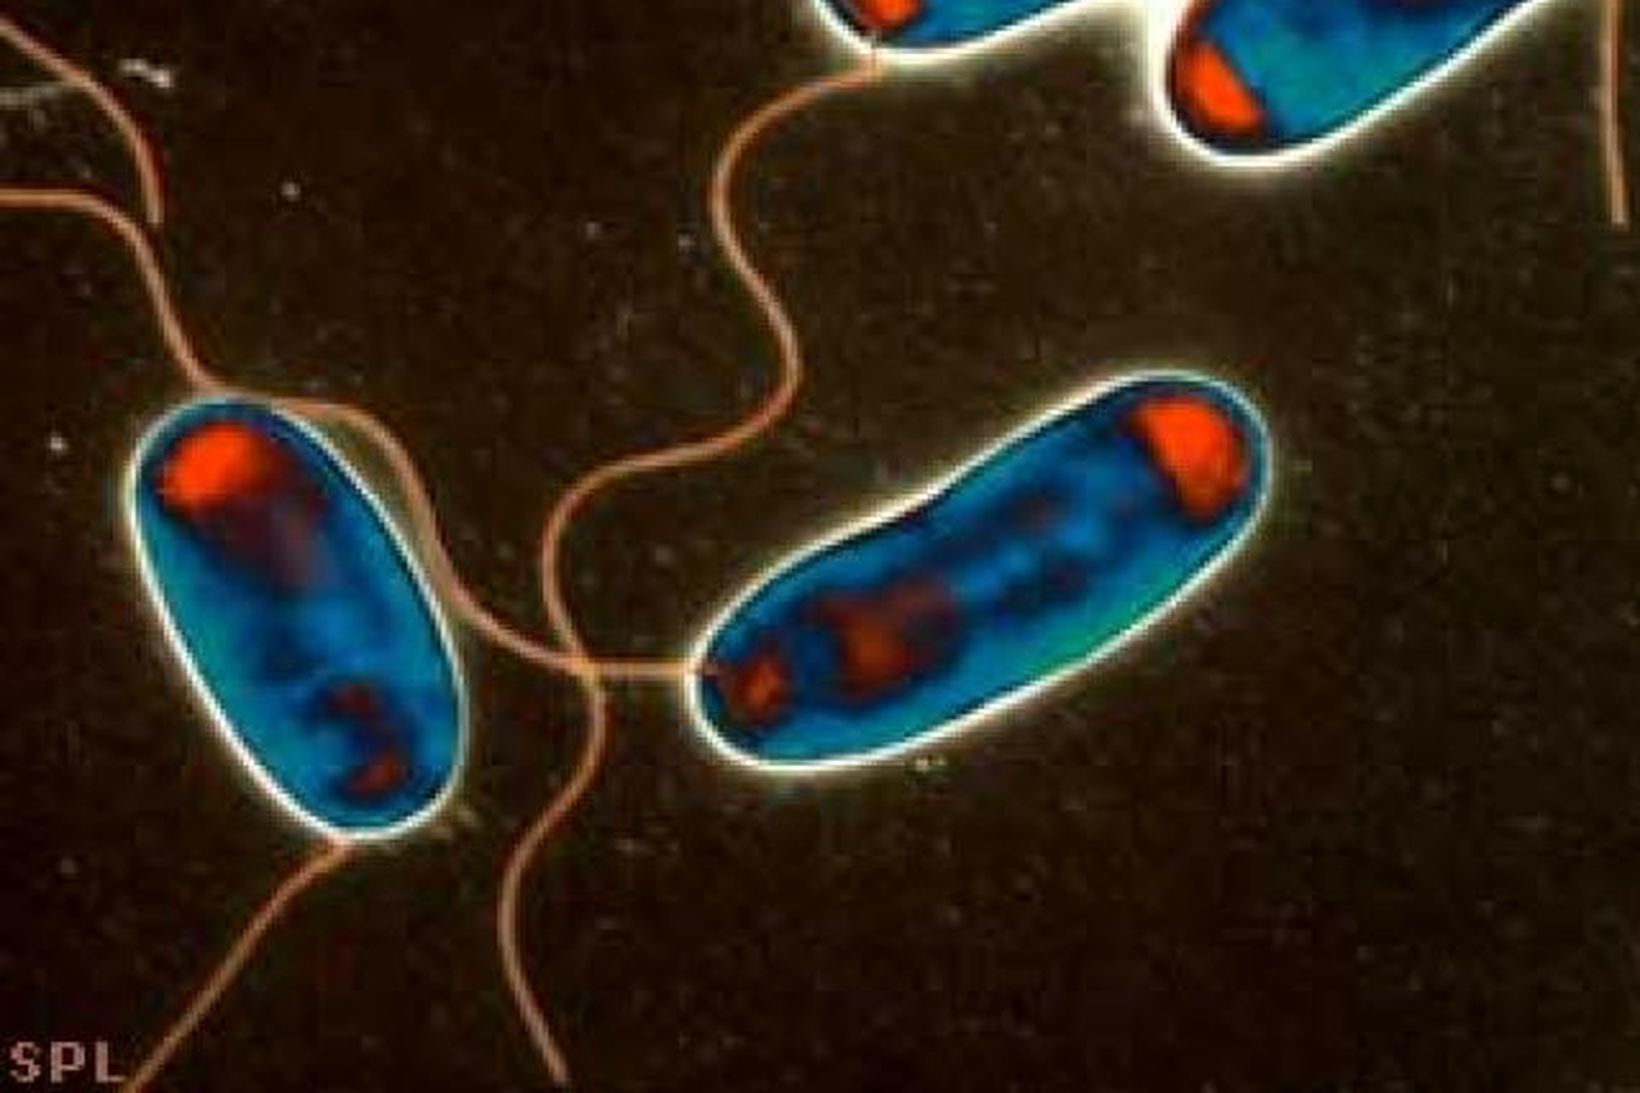 Hermannaveiki orsakast af bakteríu sem kallast Legionella pneumophila.